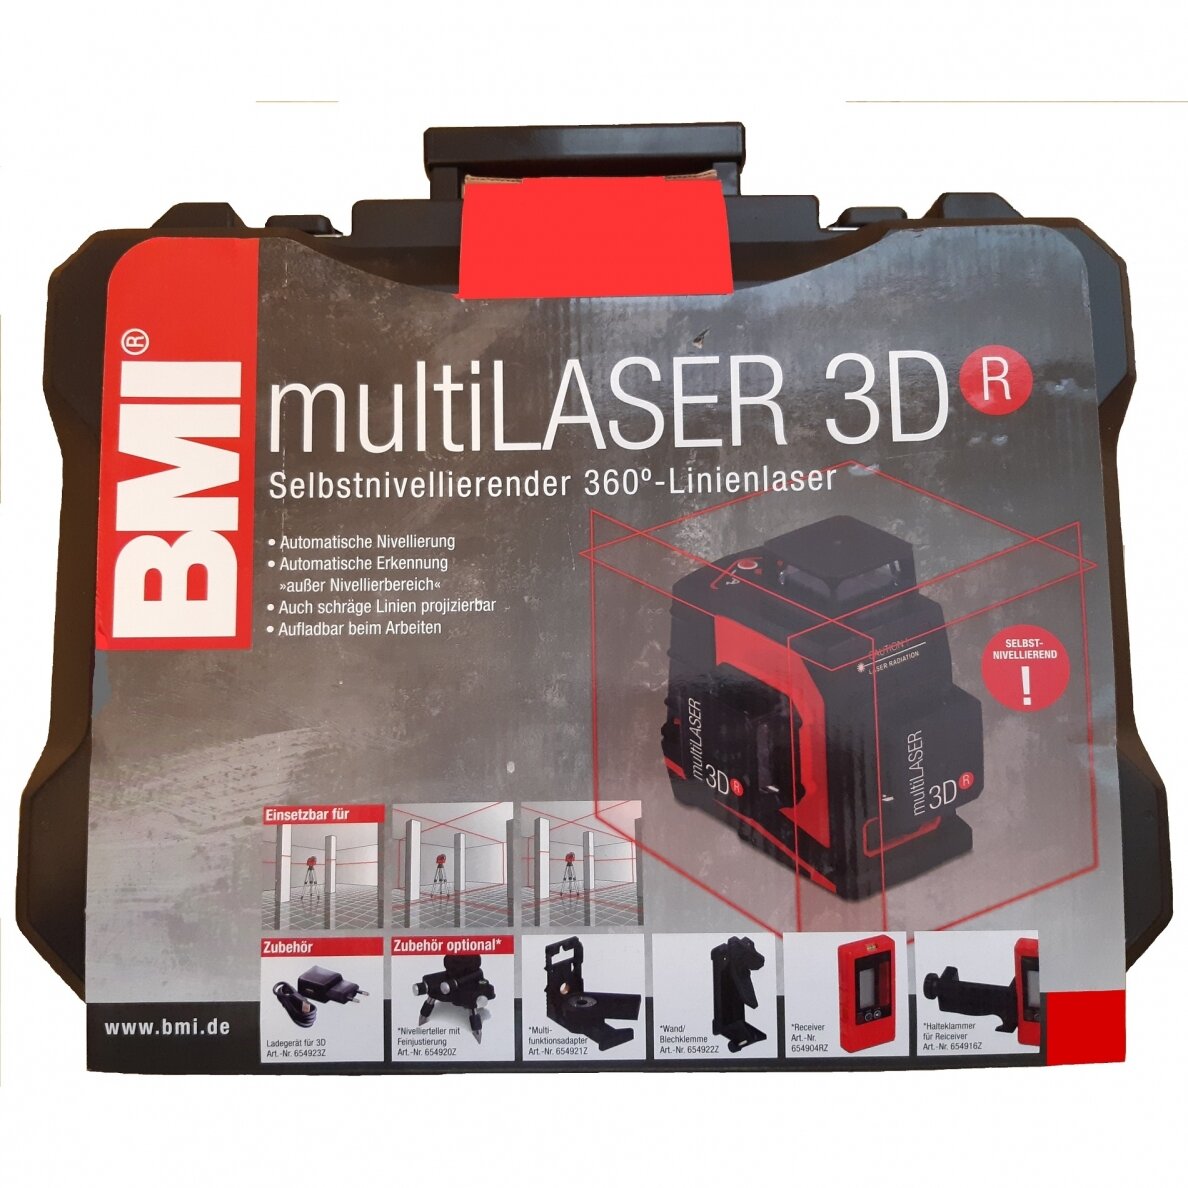 360° лазерный нивелир BMI multiLASER 3D R (набор с приемником) | BMI .